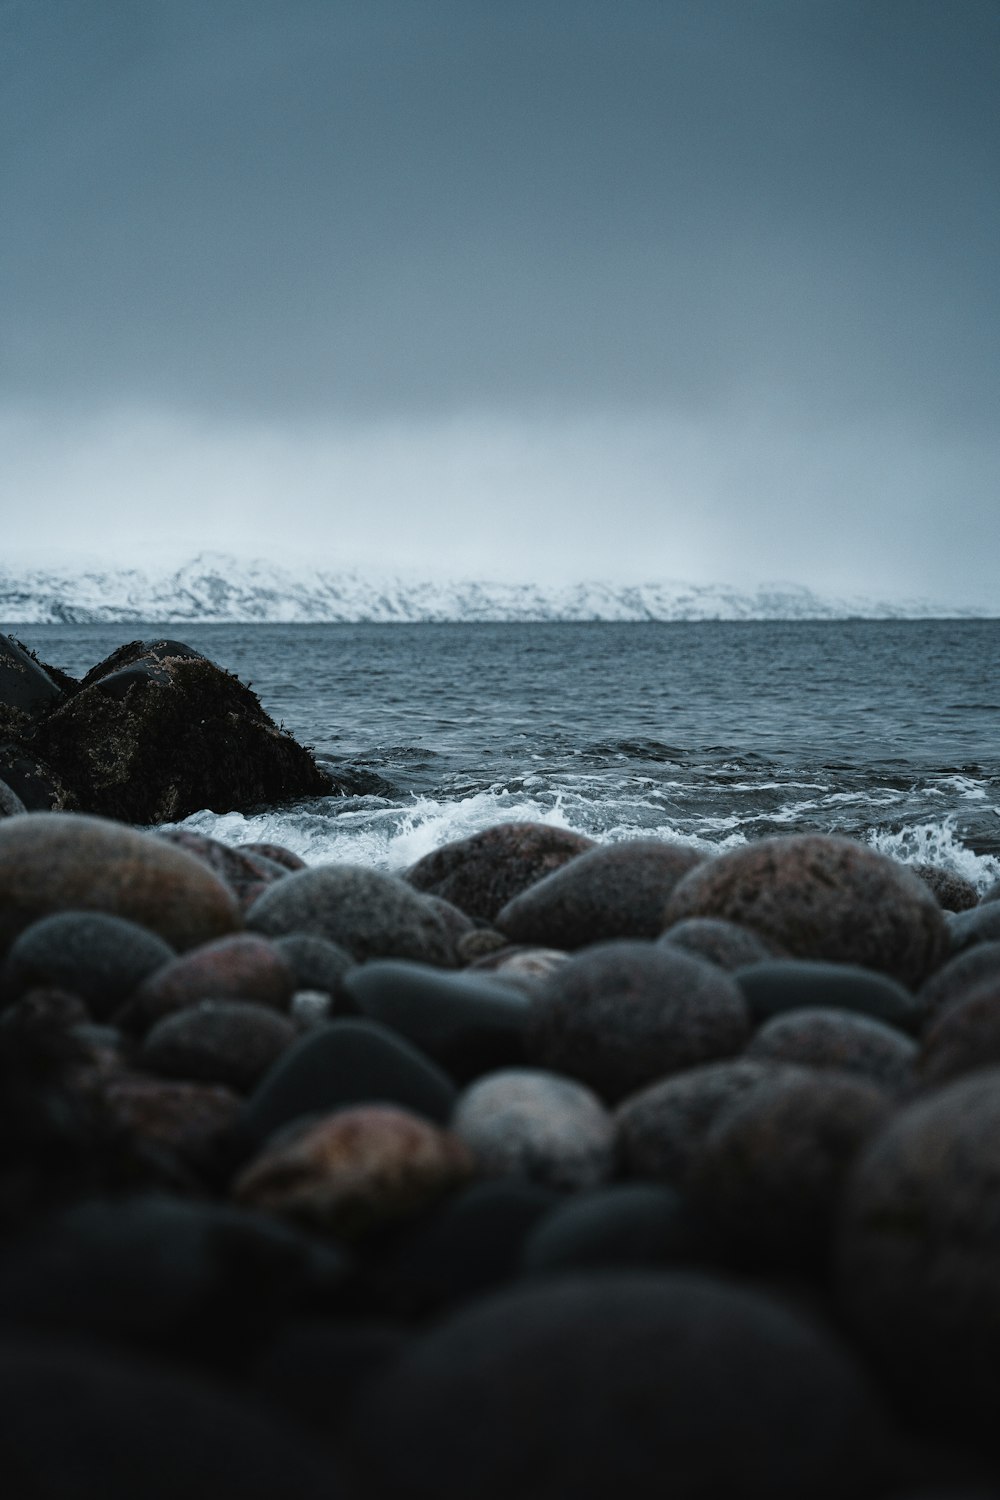 岩と水の白黒写真